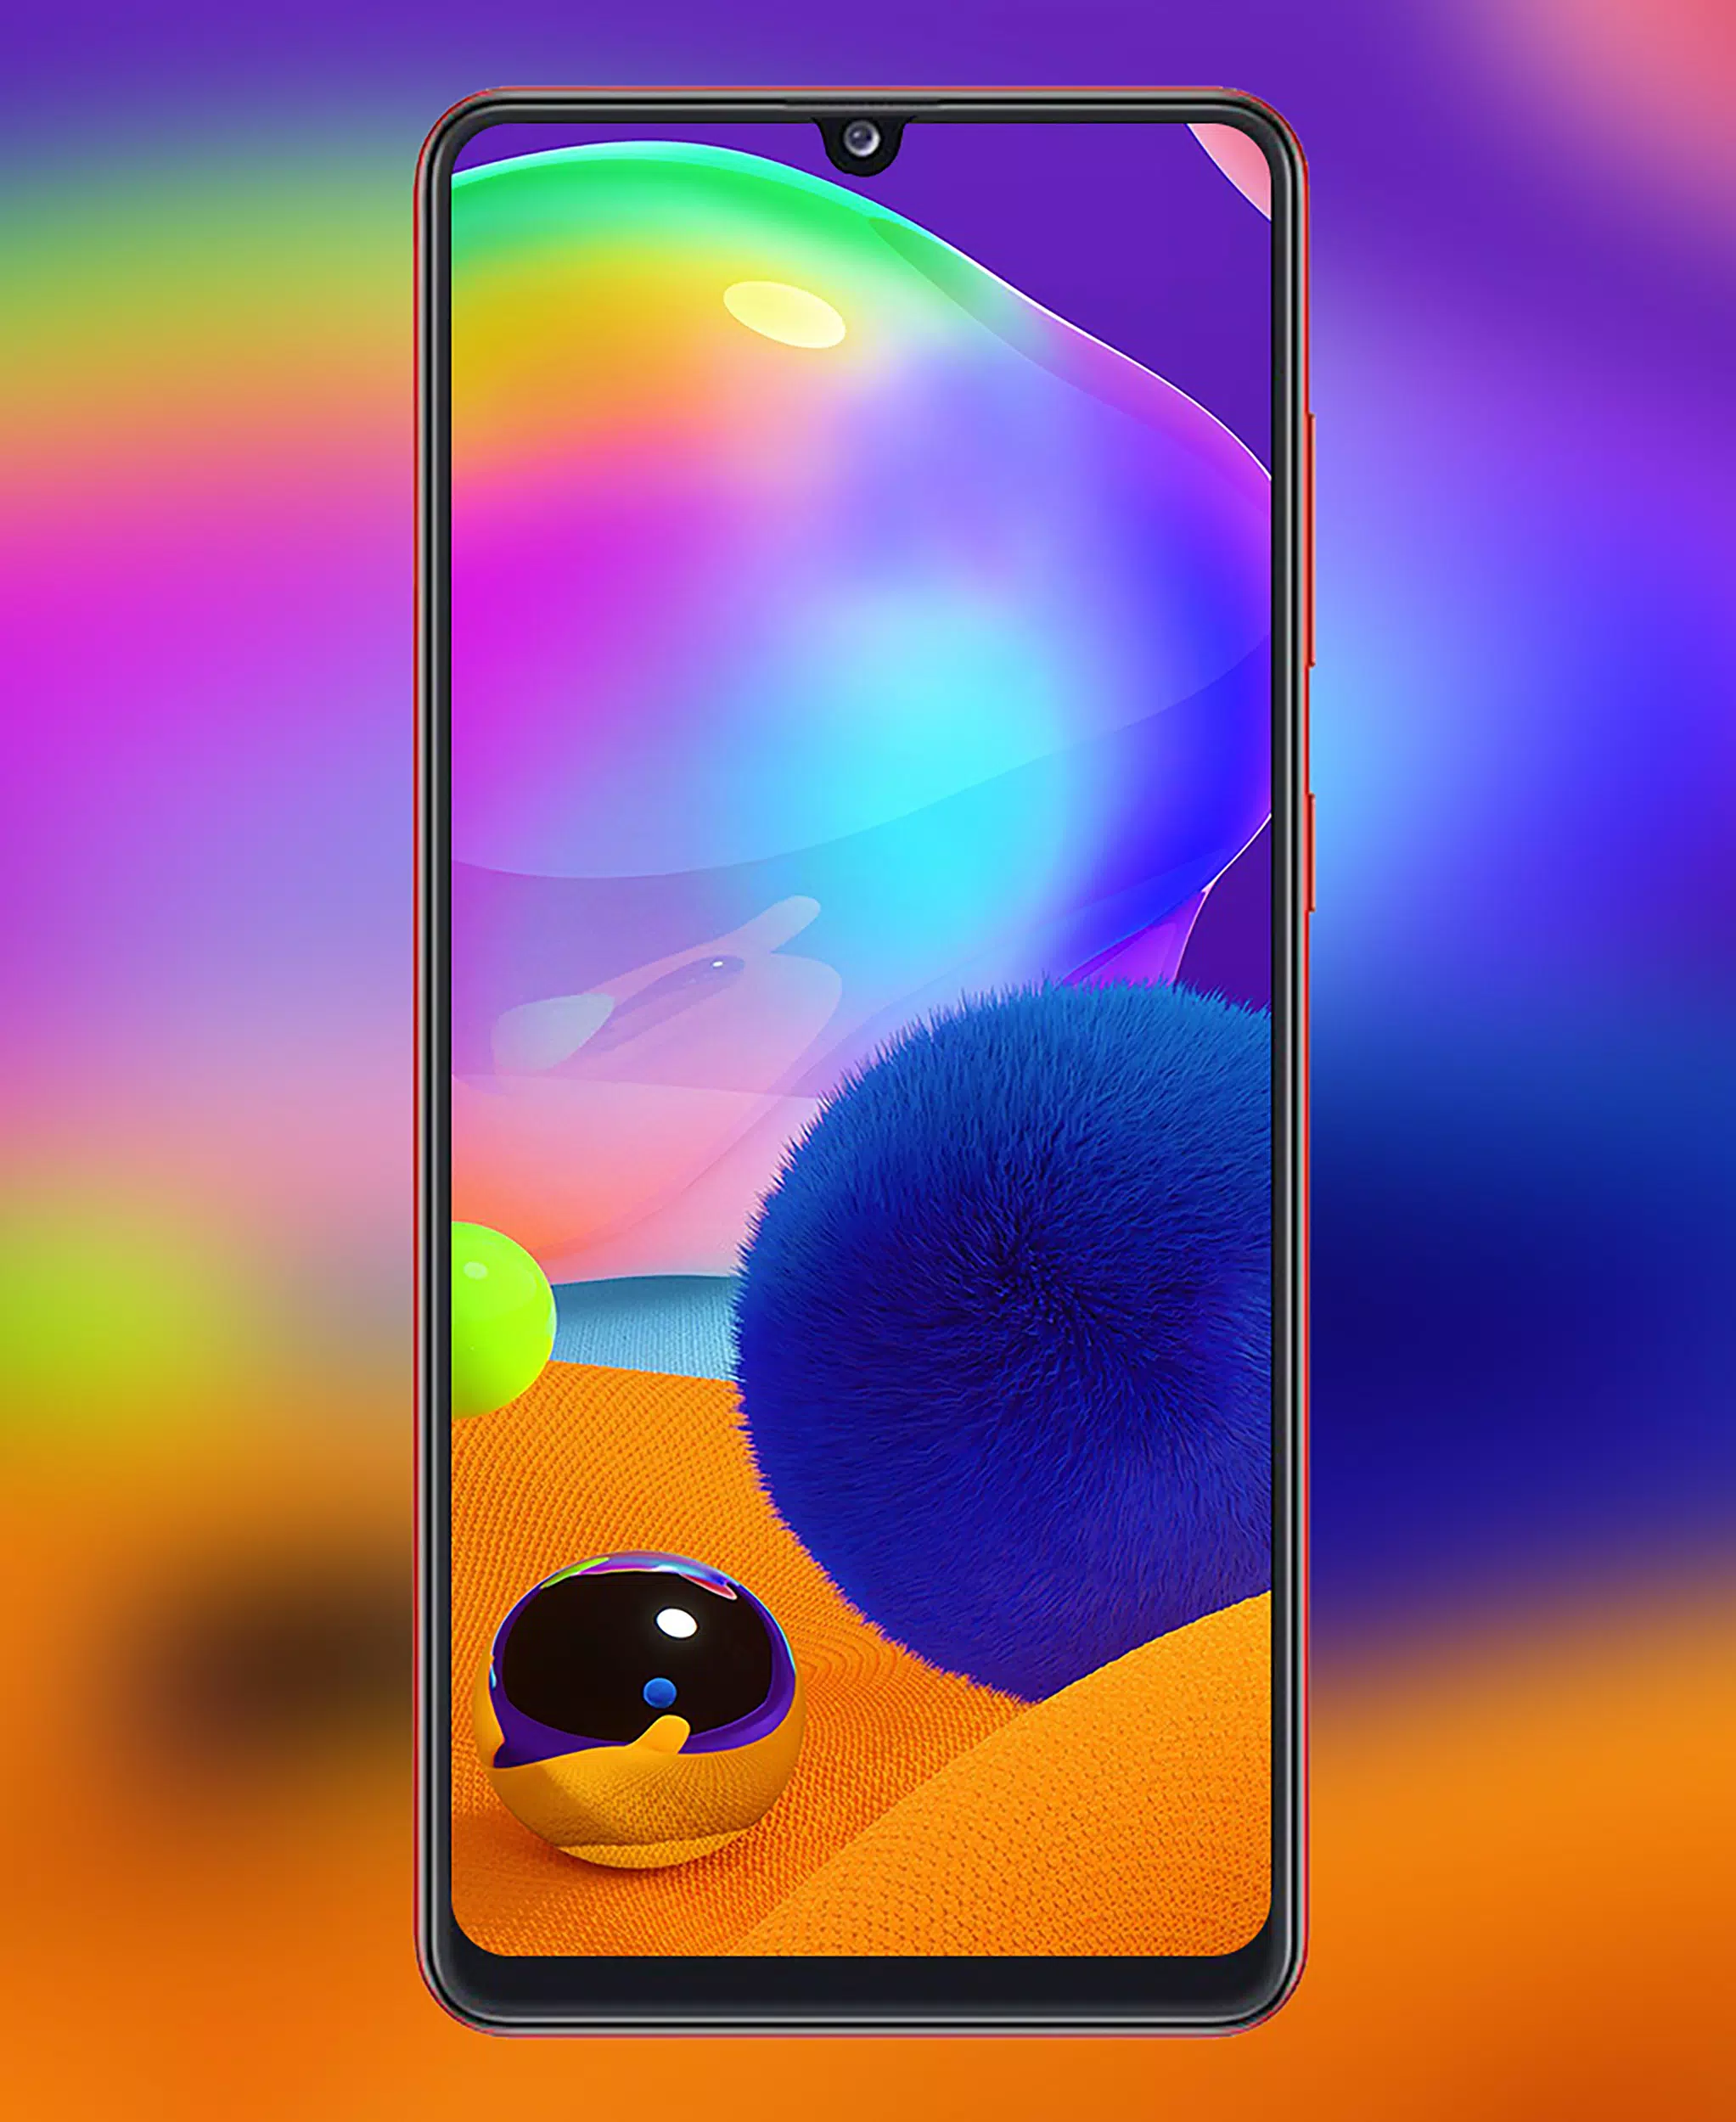 APK Galaxy A31 & A32 Wallpaper: Bạn muốn tùy chỉnh hình nền của chiếc điện thoại Samsung Galaxy A31 hoặc A32 của mình? Tại địa chỉ trang web của chúng tôi, bạn có thể dễ dàng tải xuống các bộ sưu tập hình nền đẹp mắt và độc đáo. Cắm cổng và tận hưởng trải nghiệm tuyệt vời này.